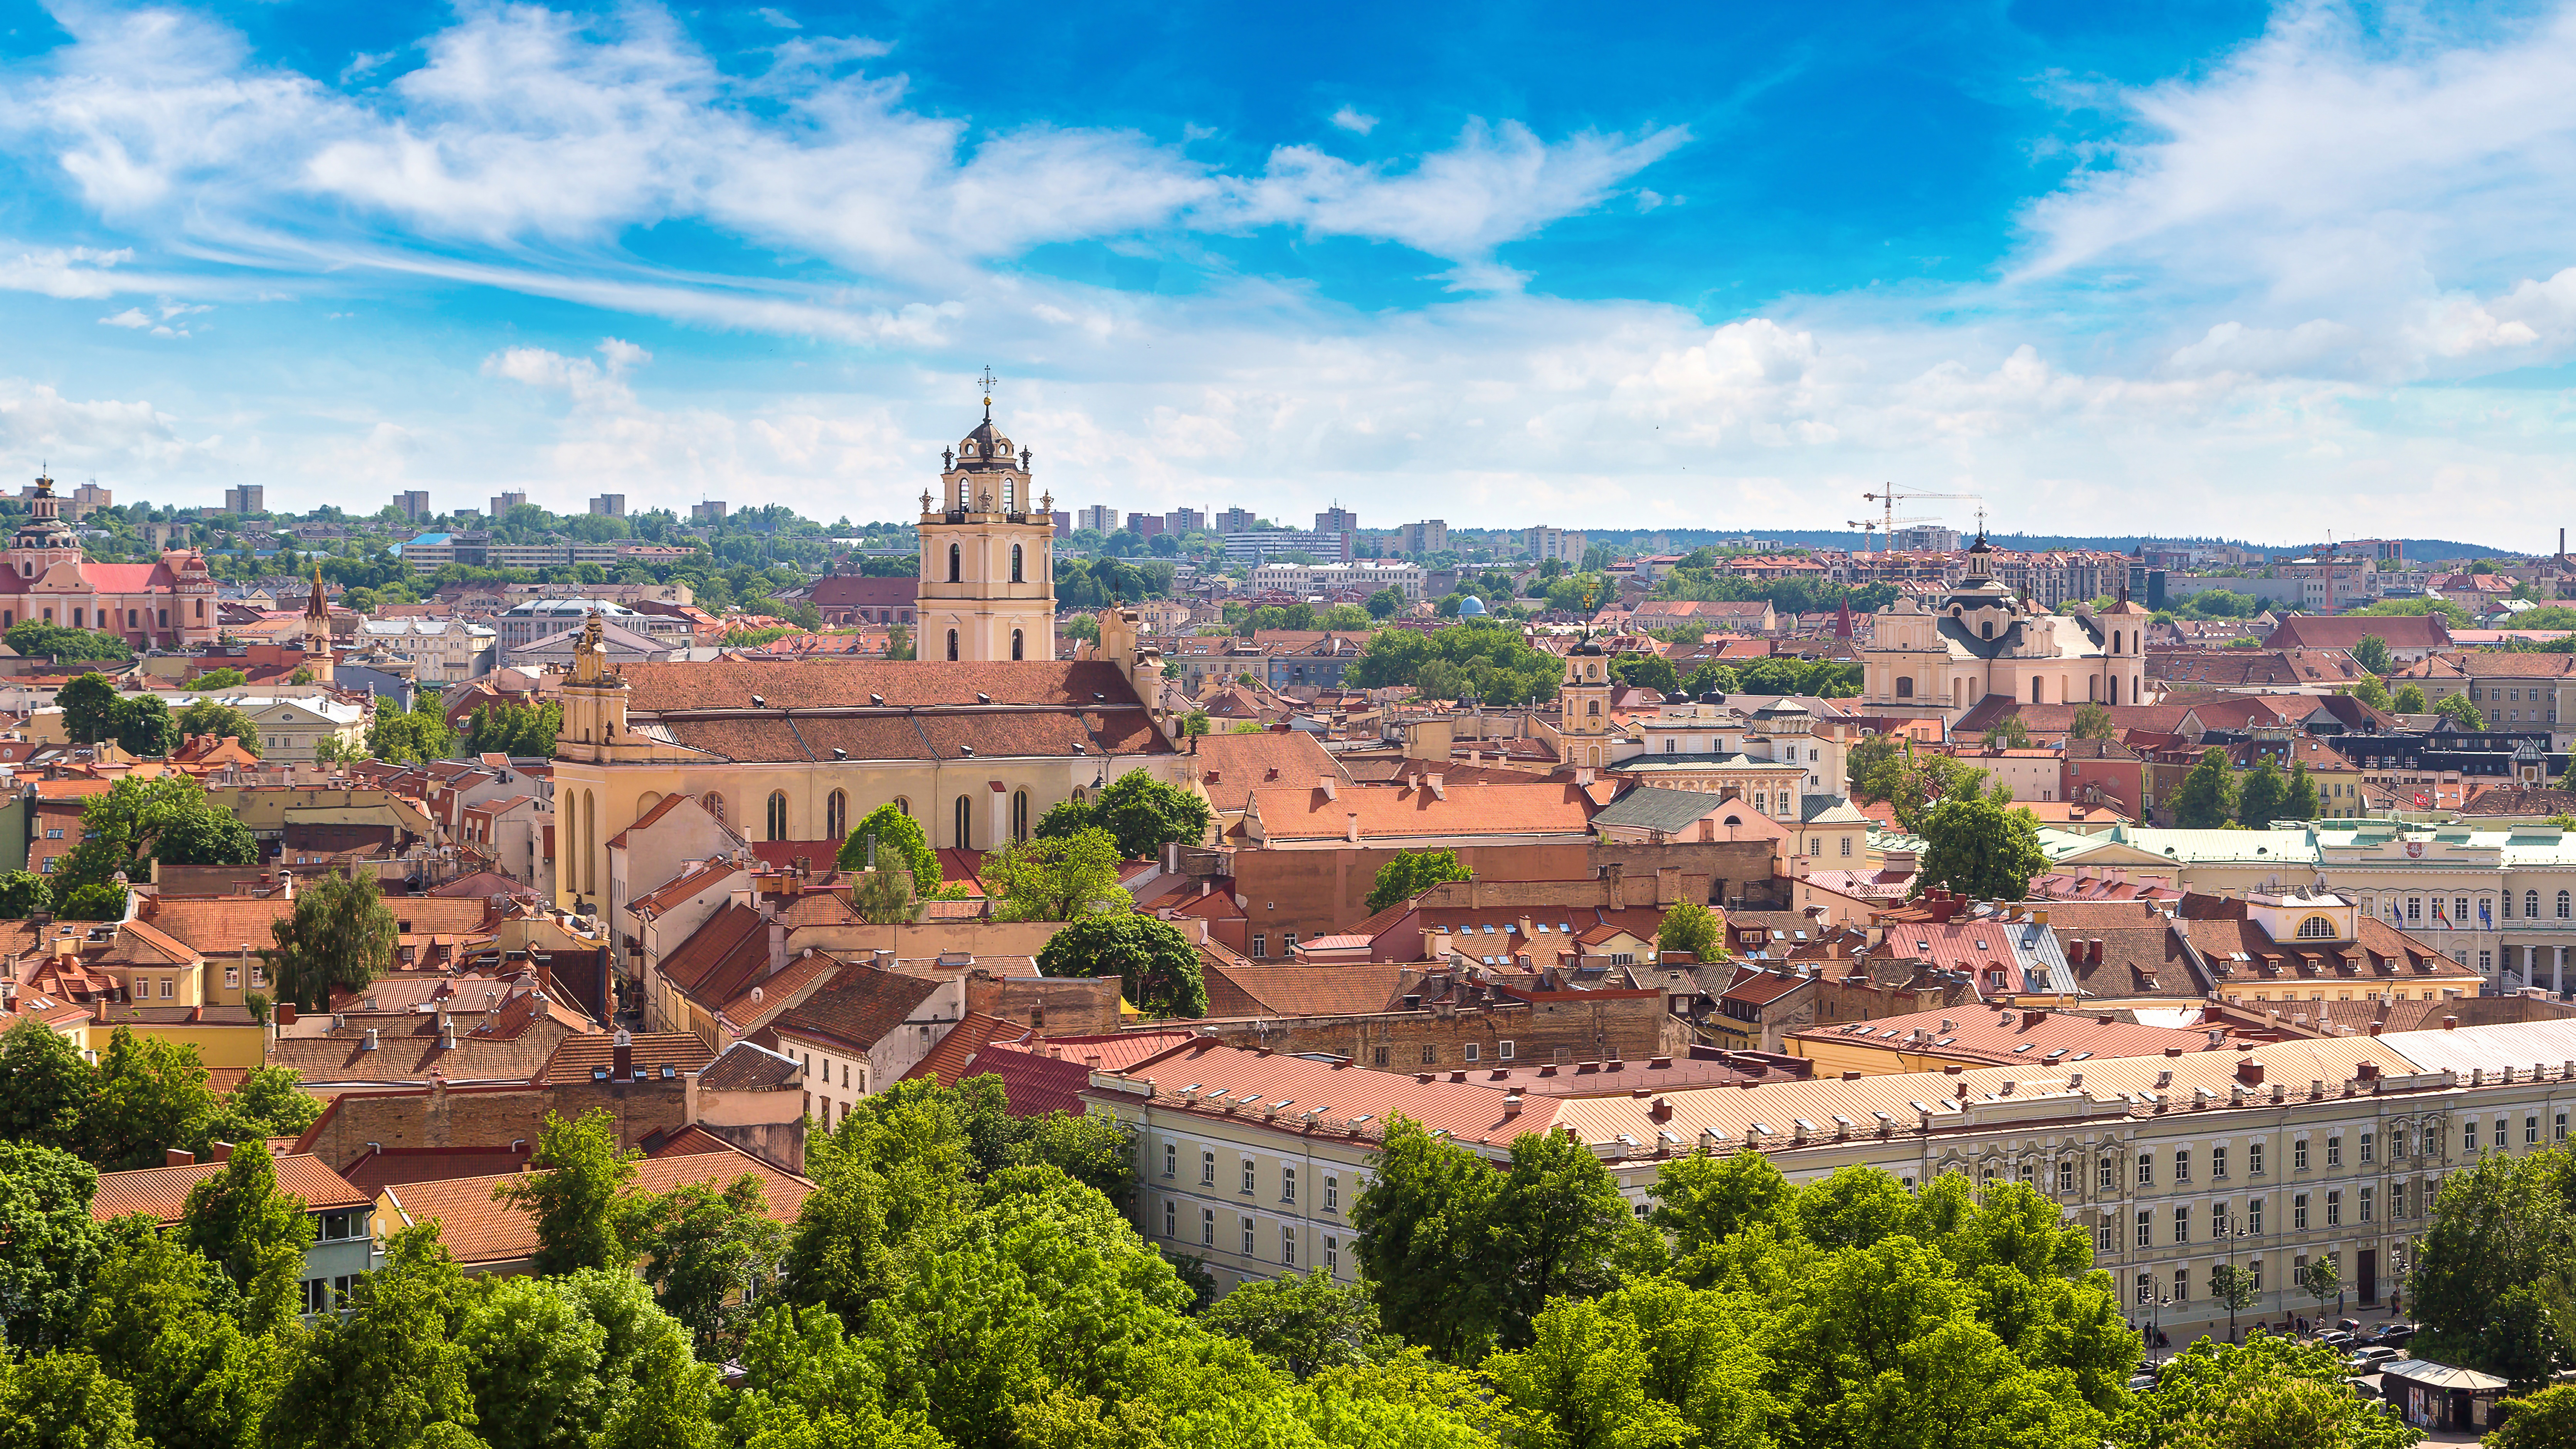 Вильнюс - столица Литвы, ВНЖ которой могут получить россияне, украинцы и белорусы